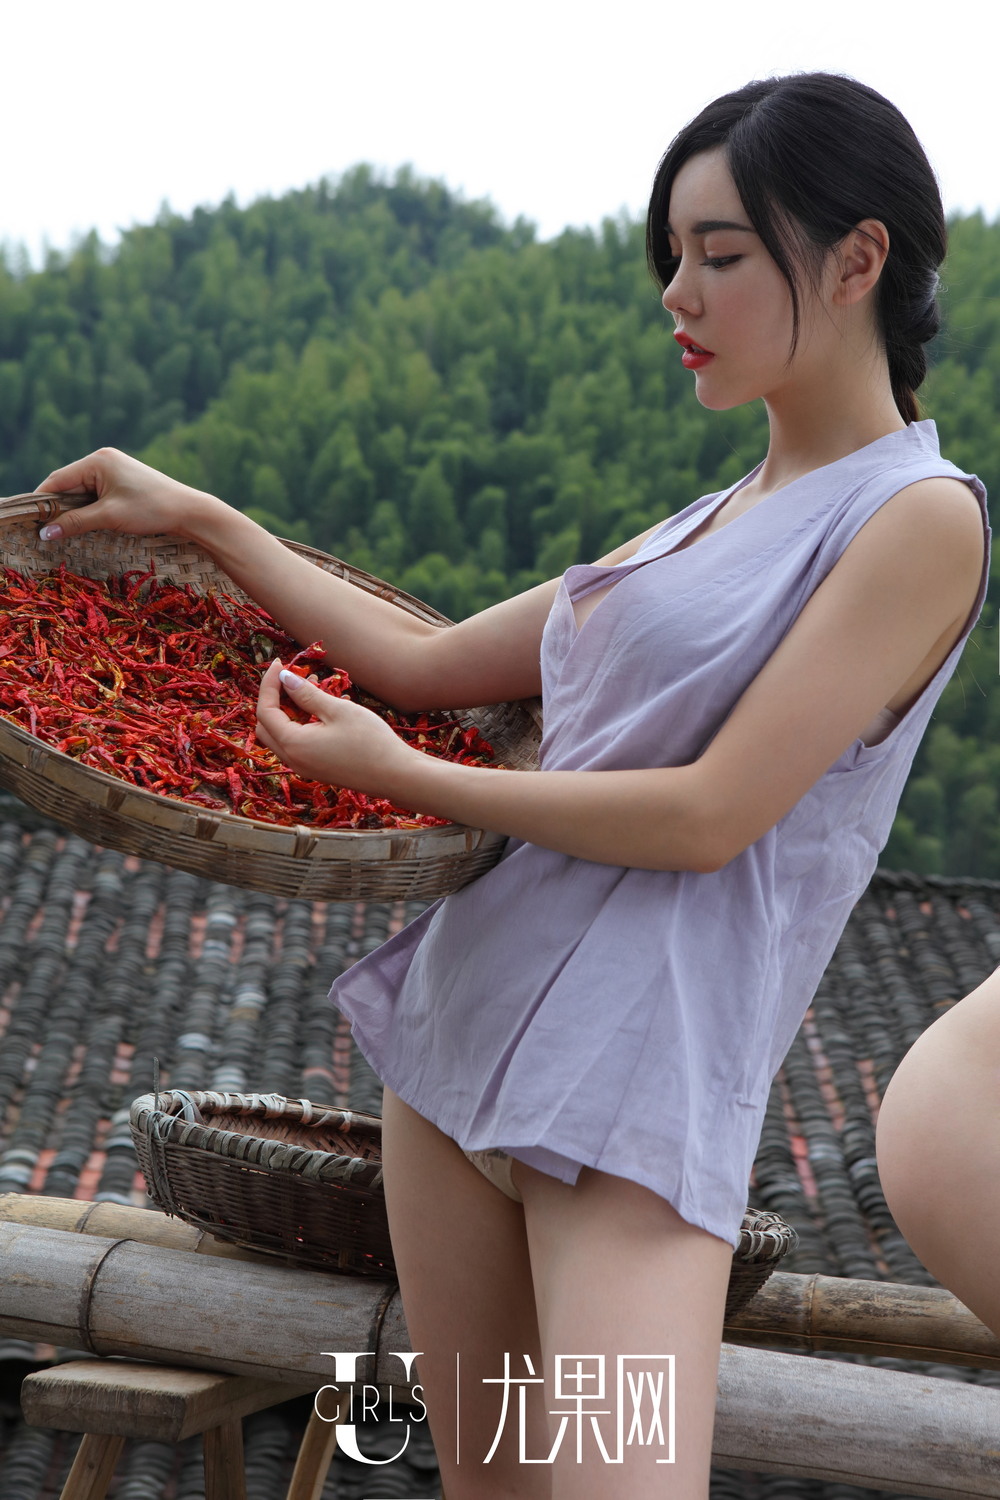 Сексуальные девушки в сельской местности Китая